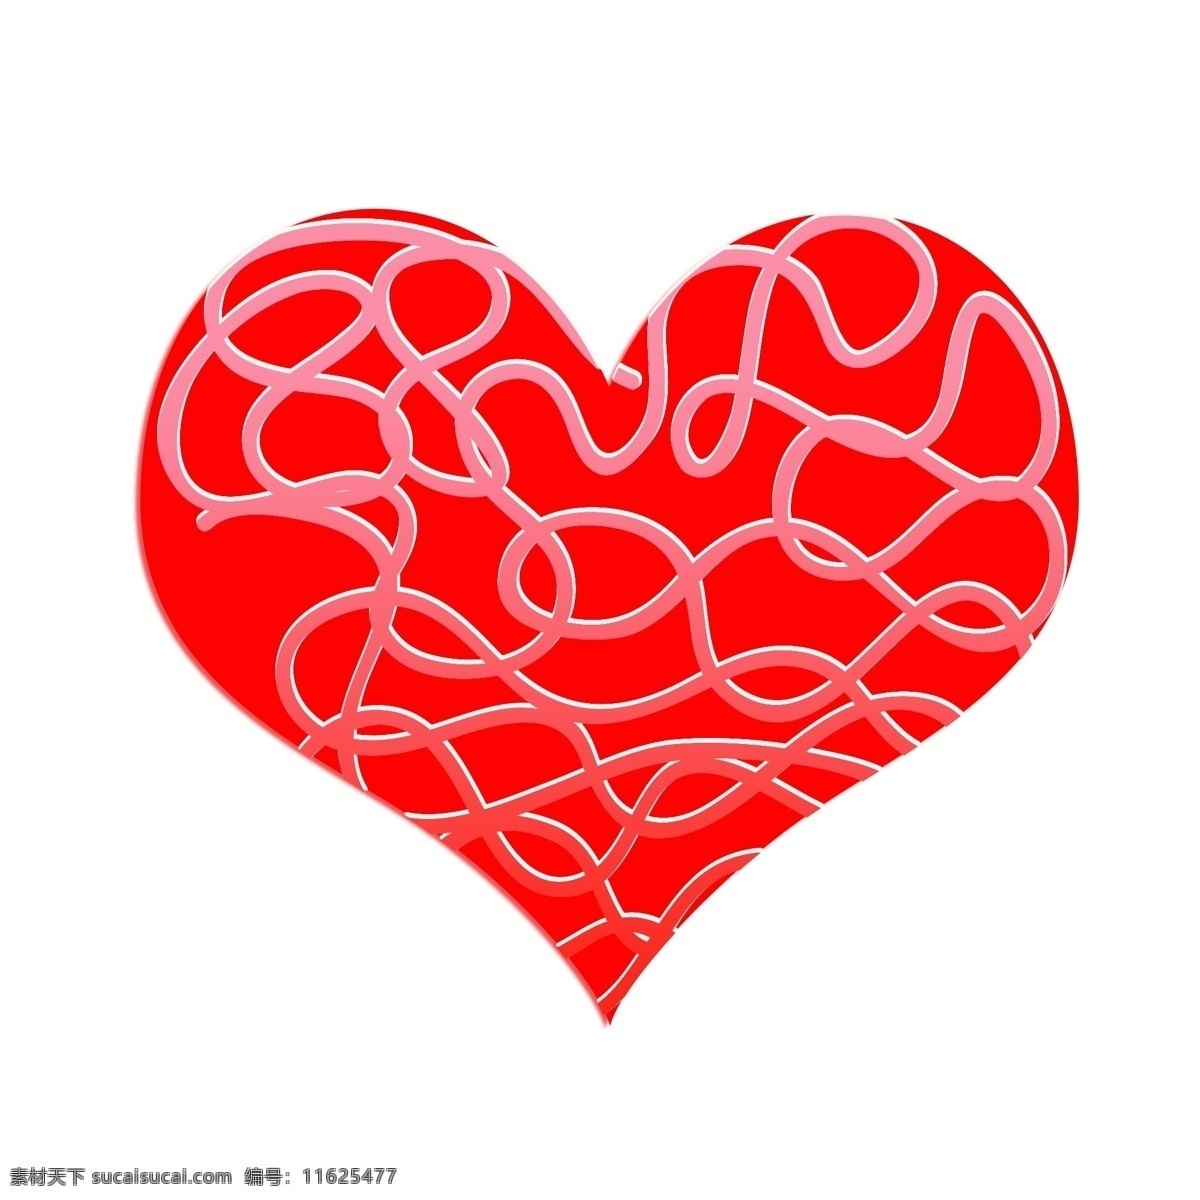 红色 简约 线条 爱心 情人节 生日 妇女节 表达爱意 海报装饰 生日聚会 结婚记念日 卡通 浪漫